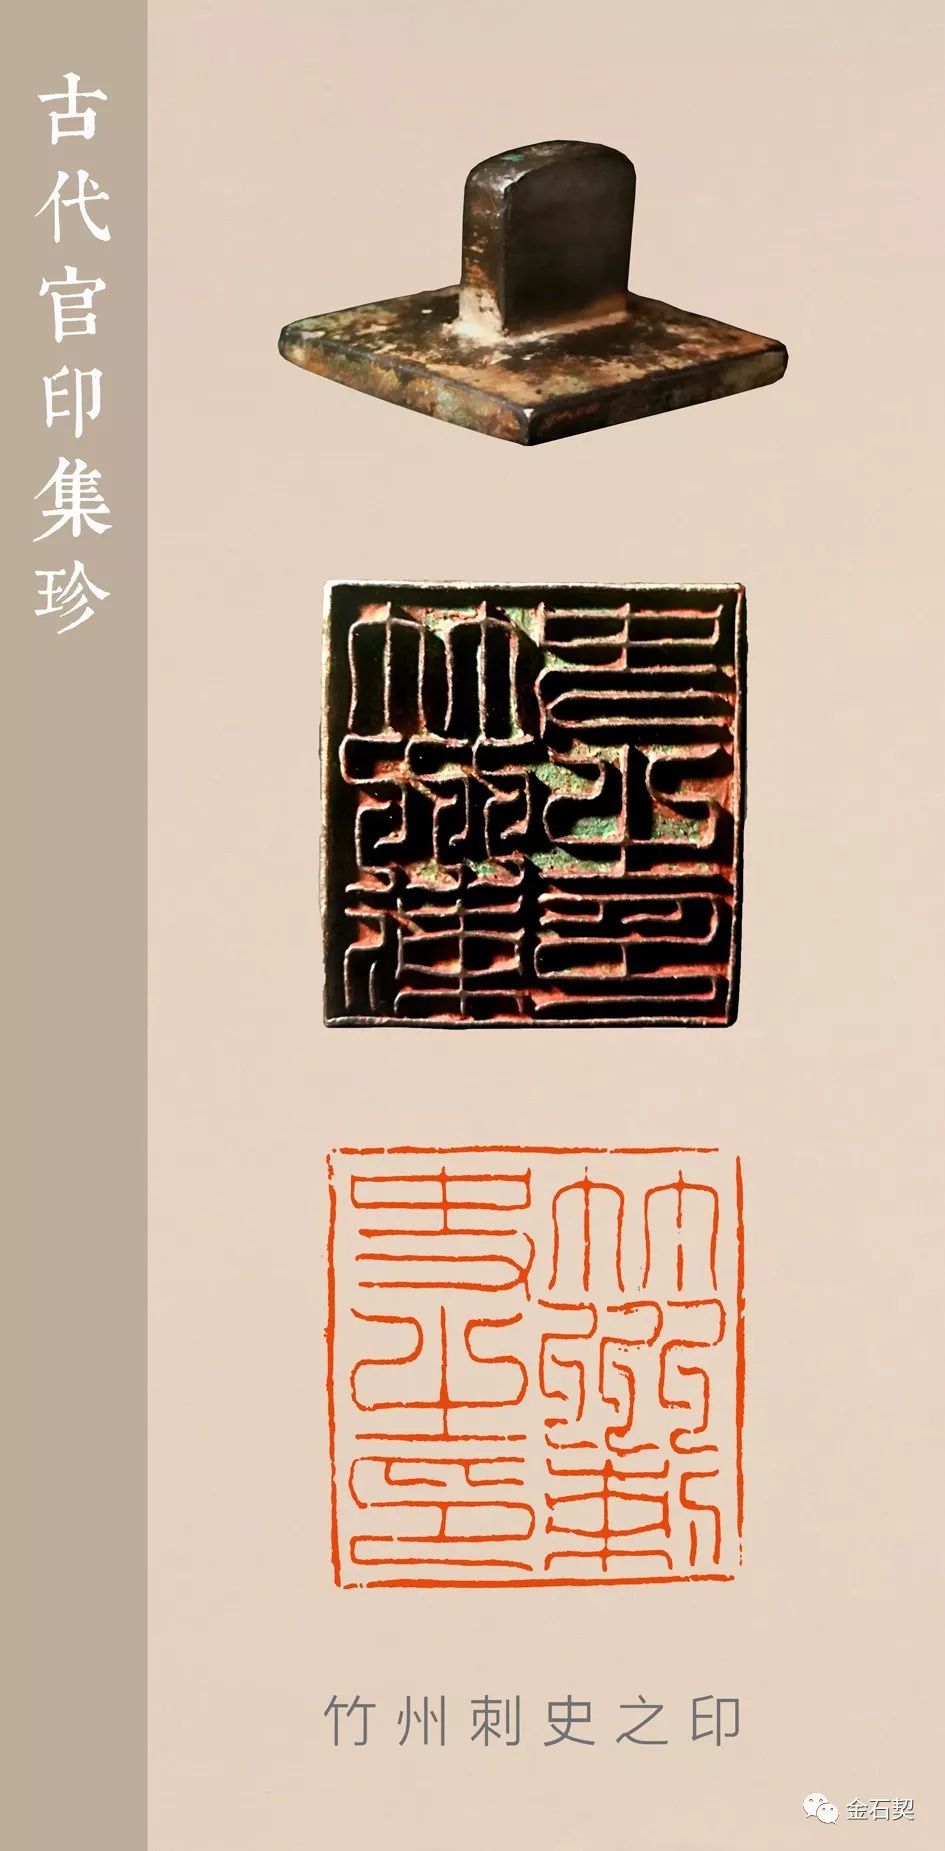 隋唐宋时期官印印面扩大,专用阳文,这使得印中文字的线条变化更为丰富